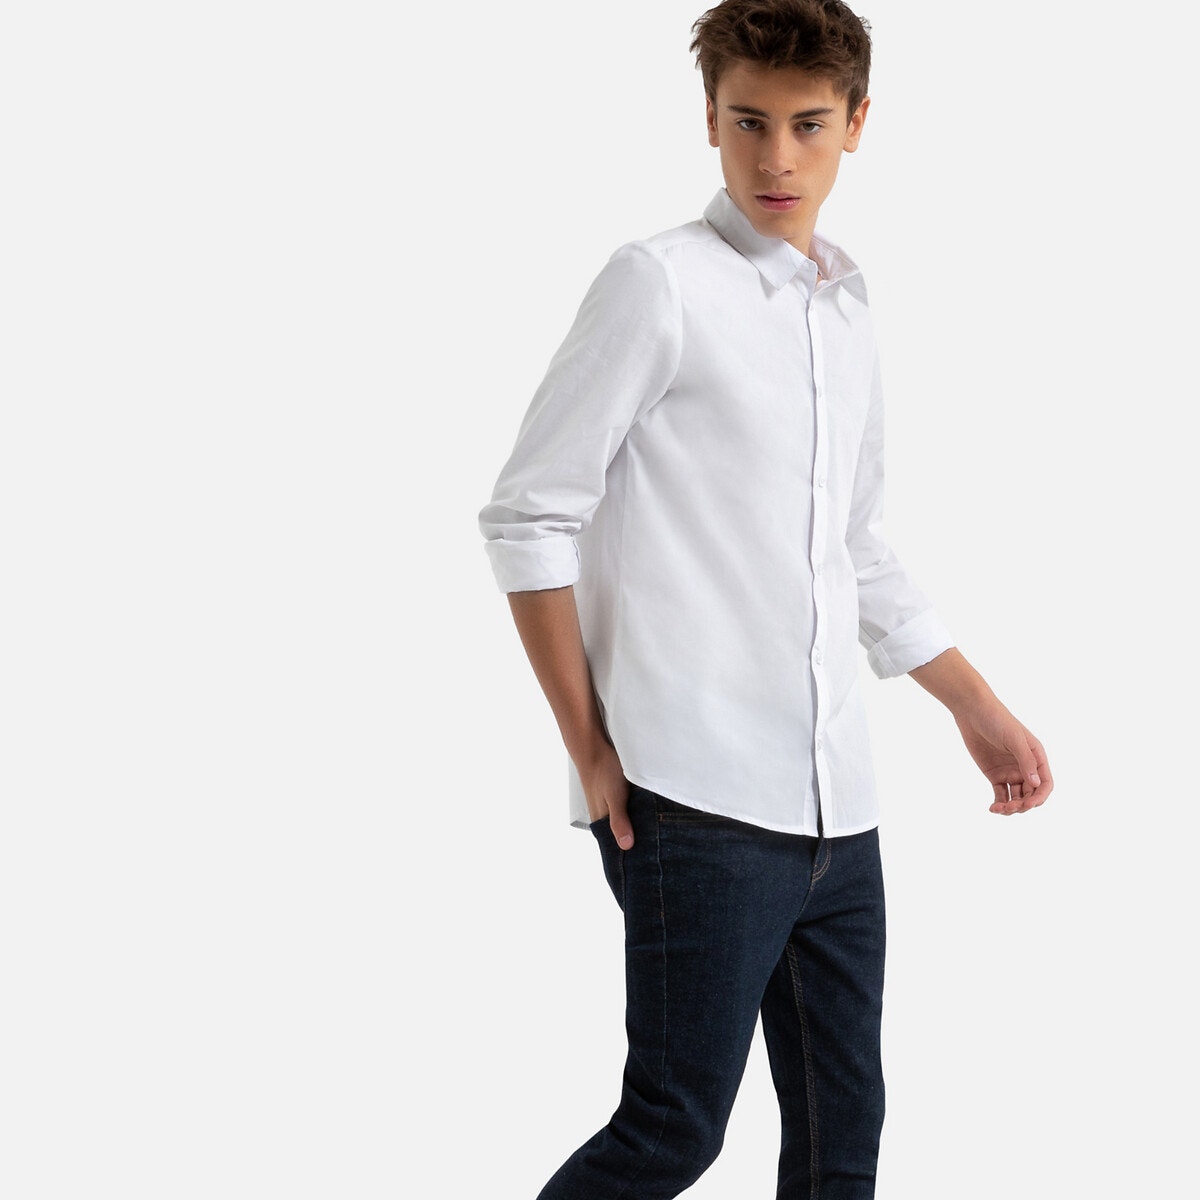 Μακρυμάνικο πουκάμισο, 10-18 ετών ΠΑΙΔΙ | Μπλούζες & Πουκάμισα | Πουκάμισα